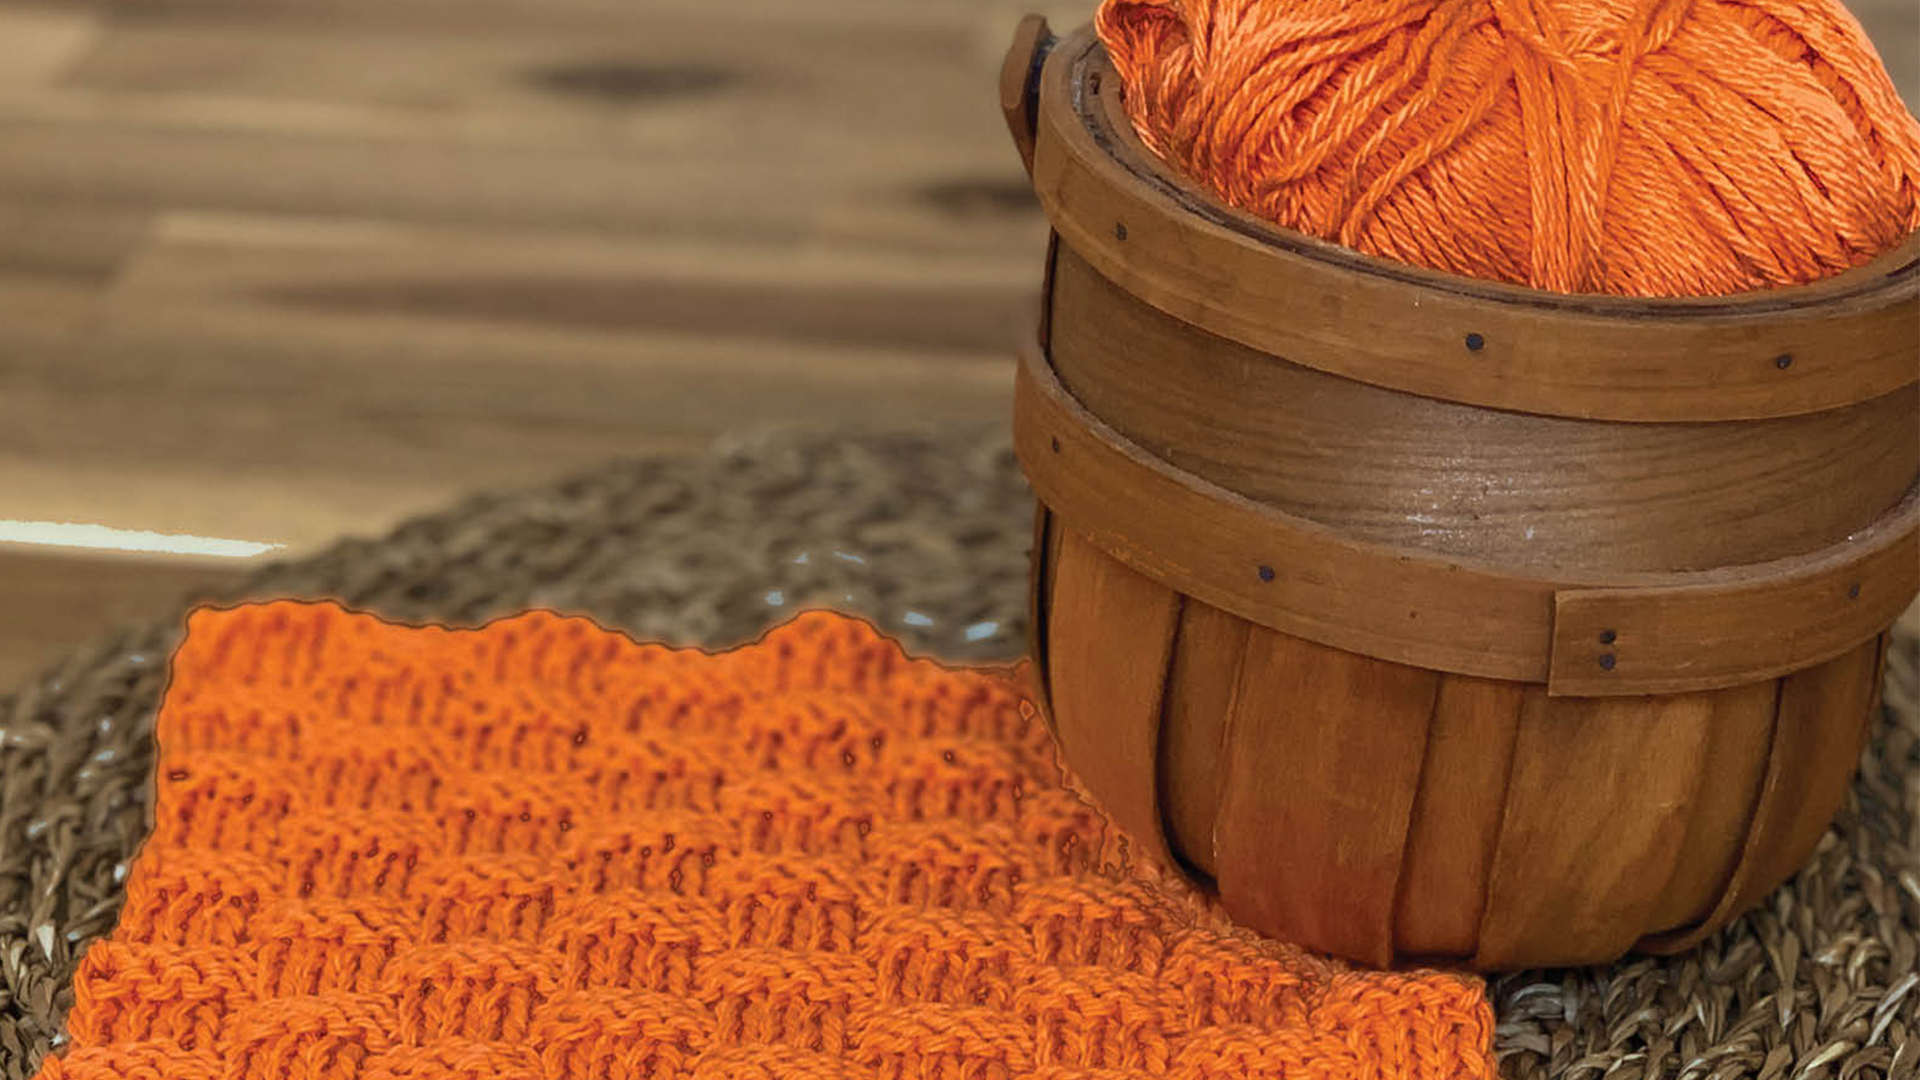 Free Knitting Pattern - Basket Weave Dishcloth